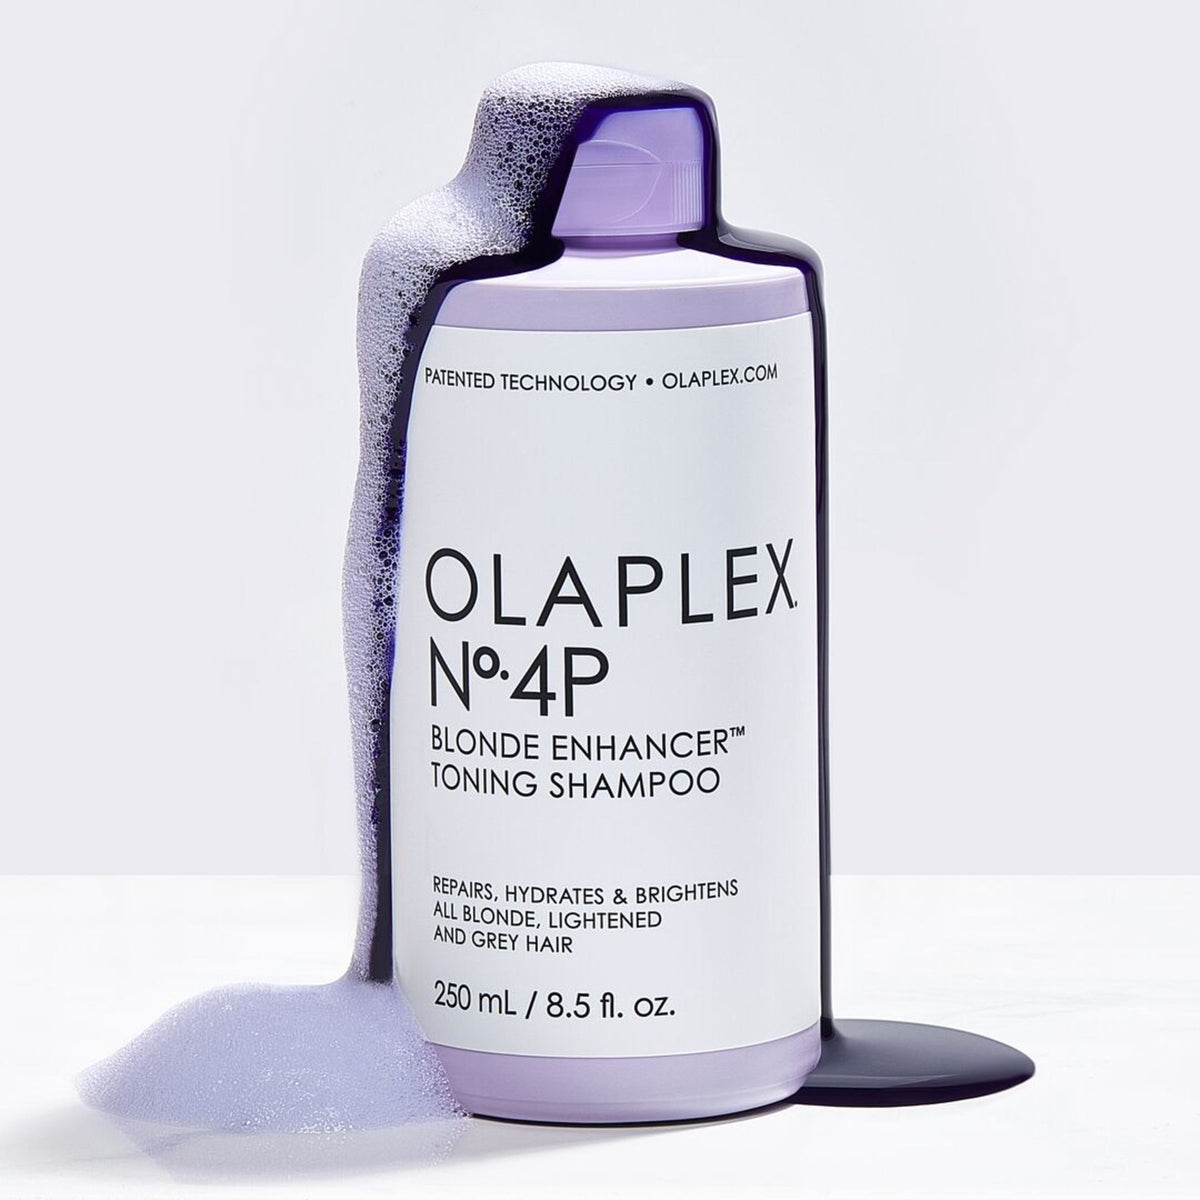 Olaplex No.4P Blonde Enhancer Toning Shampoo .